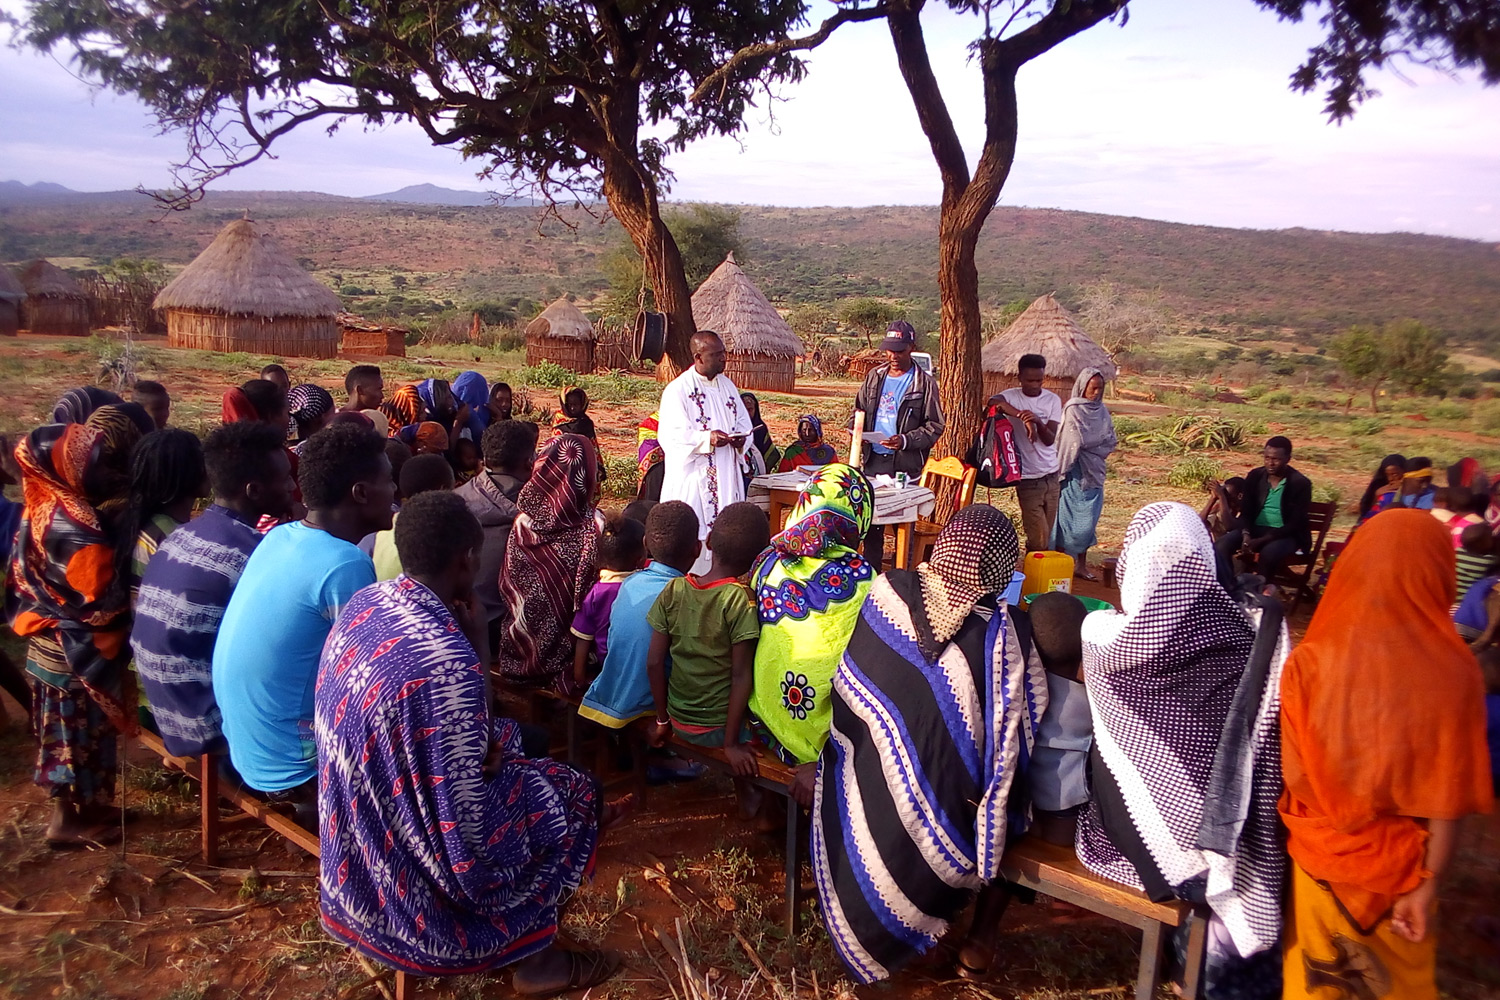 ETIÓPIA: Apoio ao apostolado juvenil numa região remota no sul do país